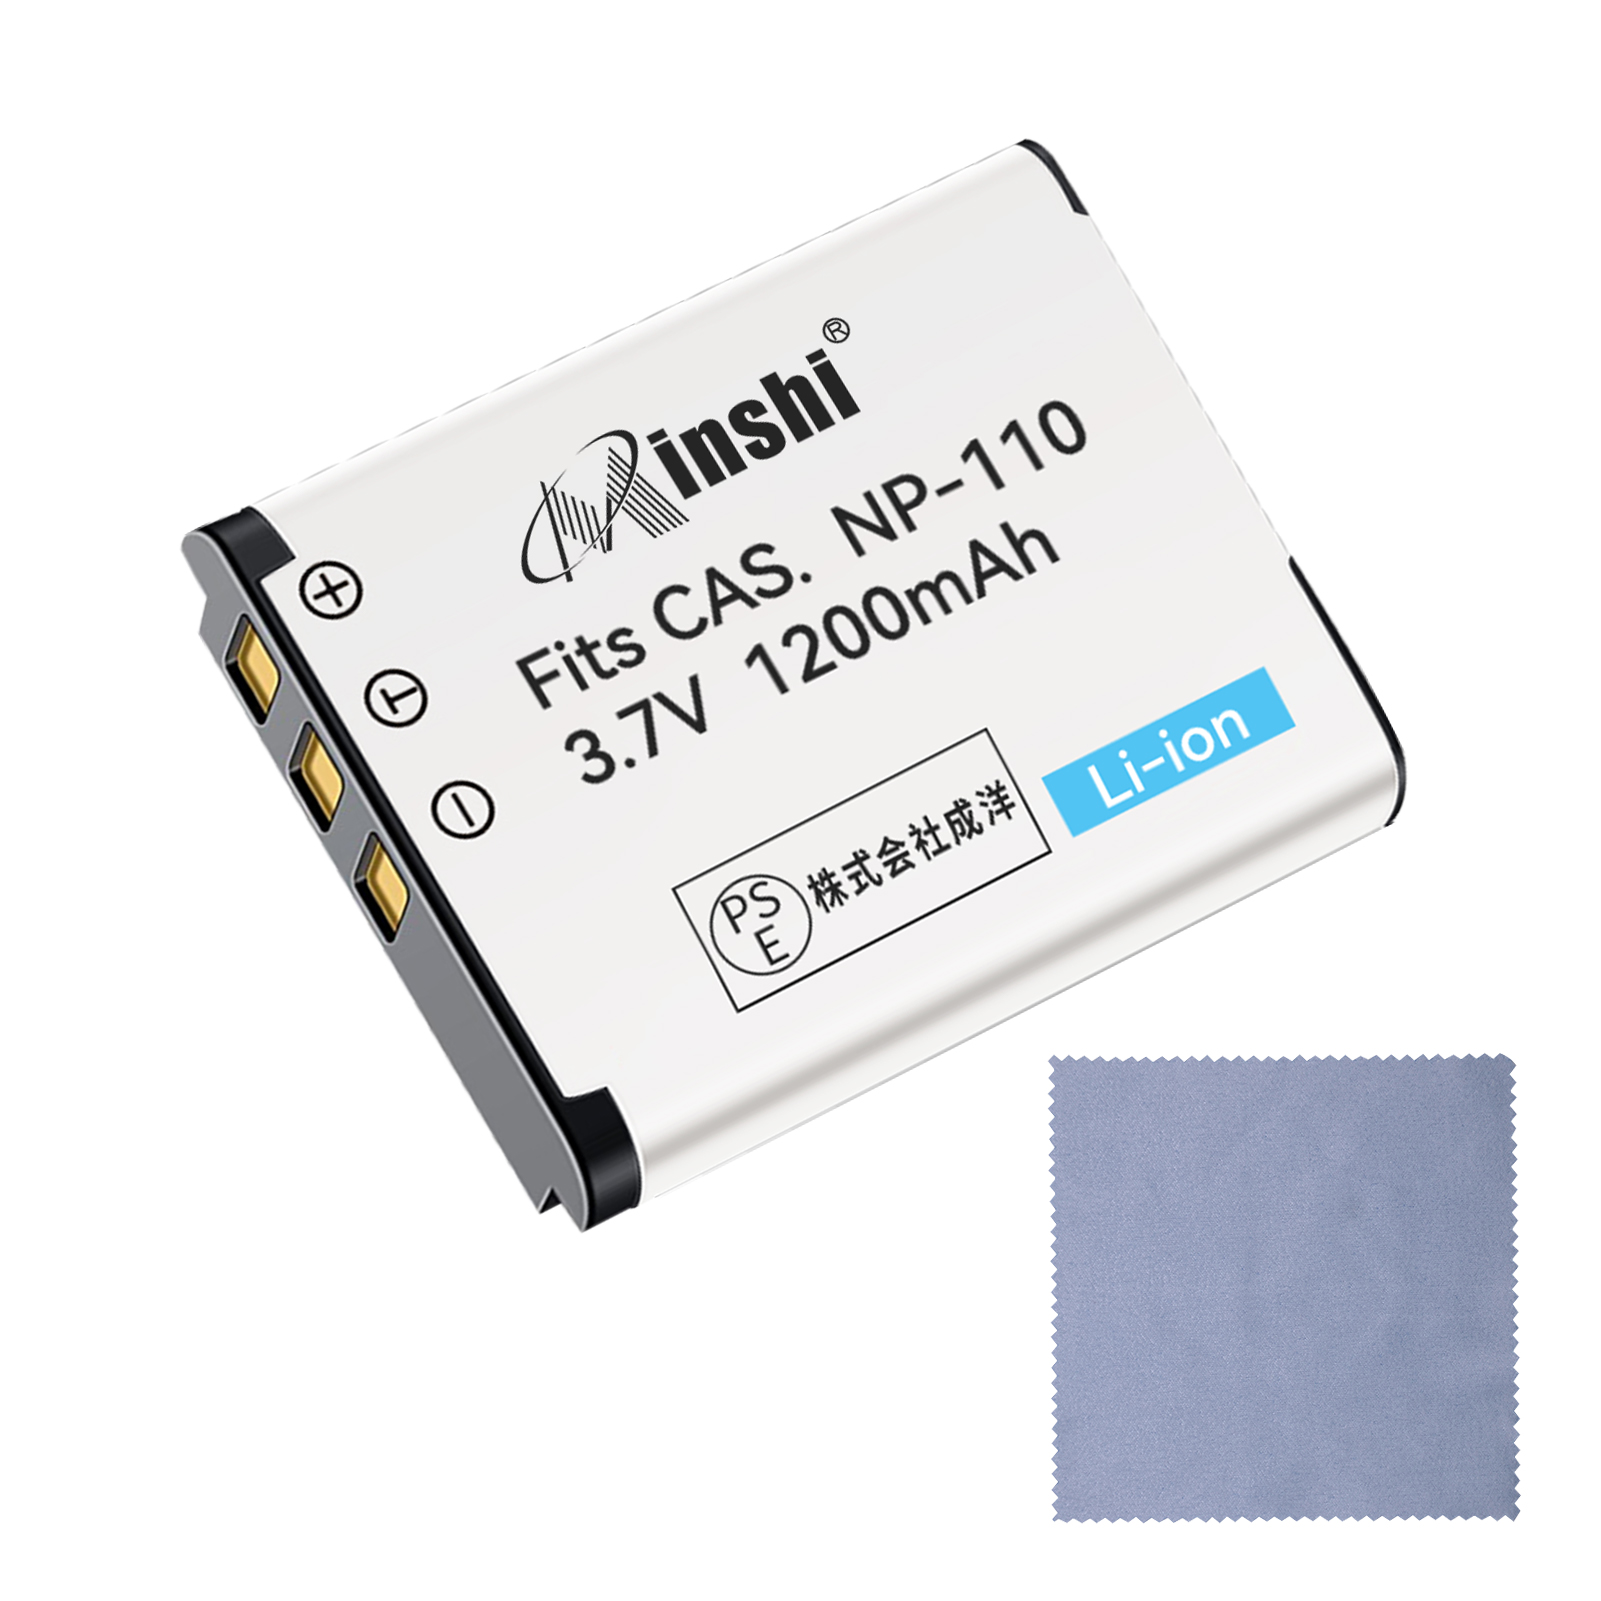 【クロス付き】minshi CASIO JVC NP-110 【1200mAh 3.7V】PSE認定済 高品質交換用バッテリー